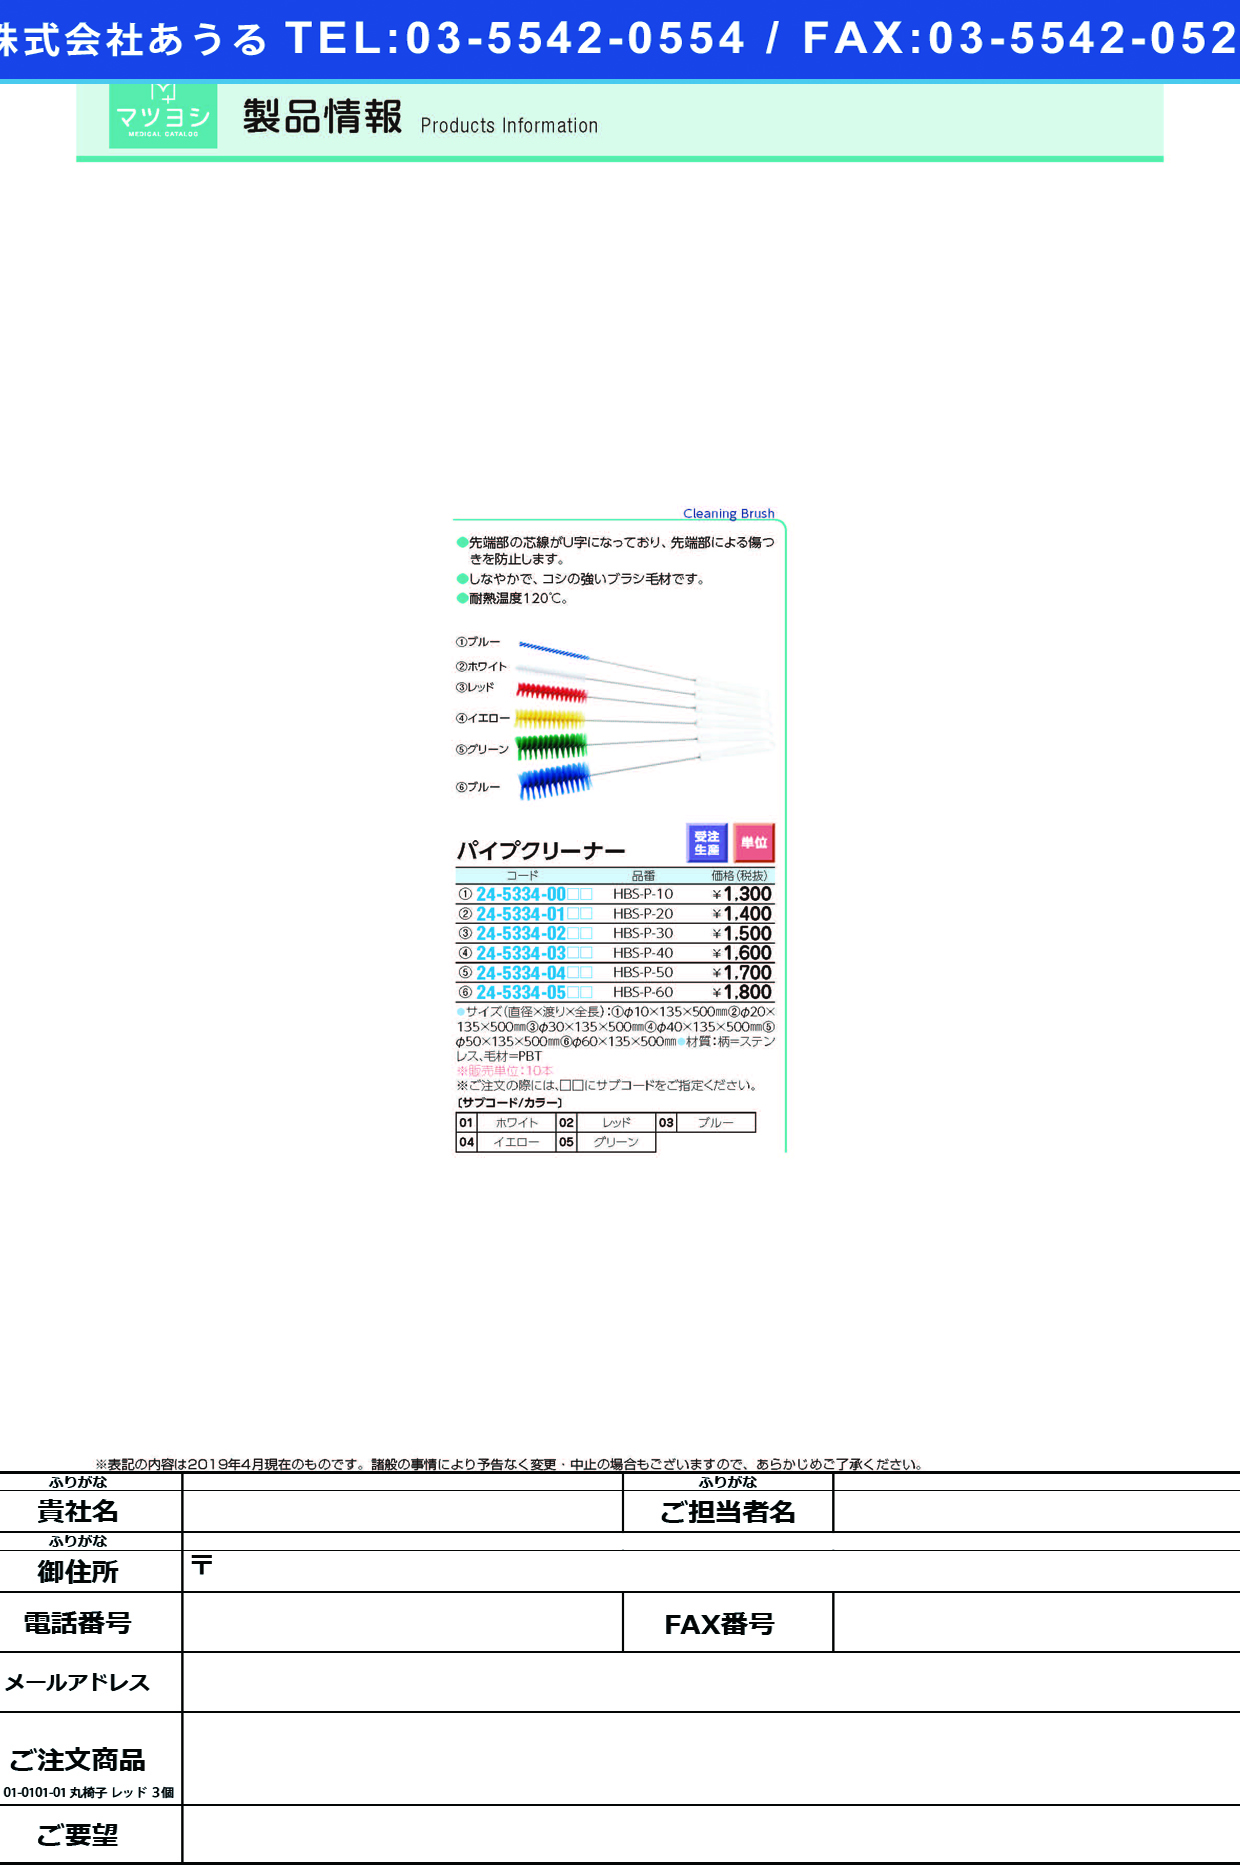 (24-5334-00)パイプクリーナー HBS-P-10 ﾊﾟｲﾌﾟｸﾘｰﾅｰ ホワイト【10本単位】【2019年カタログ商品】